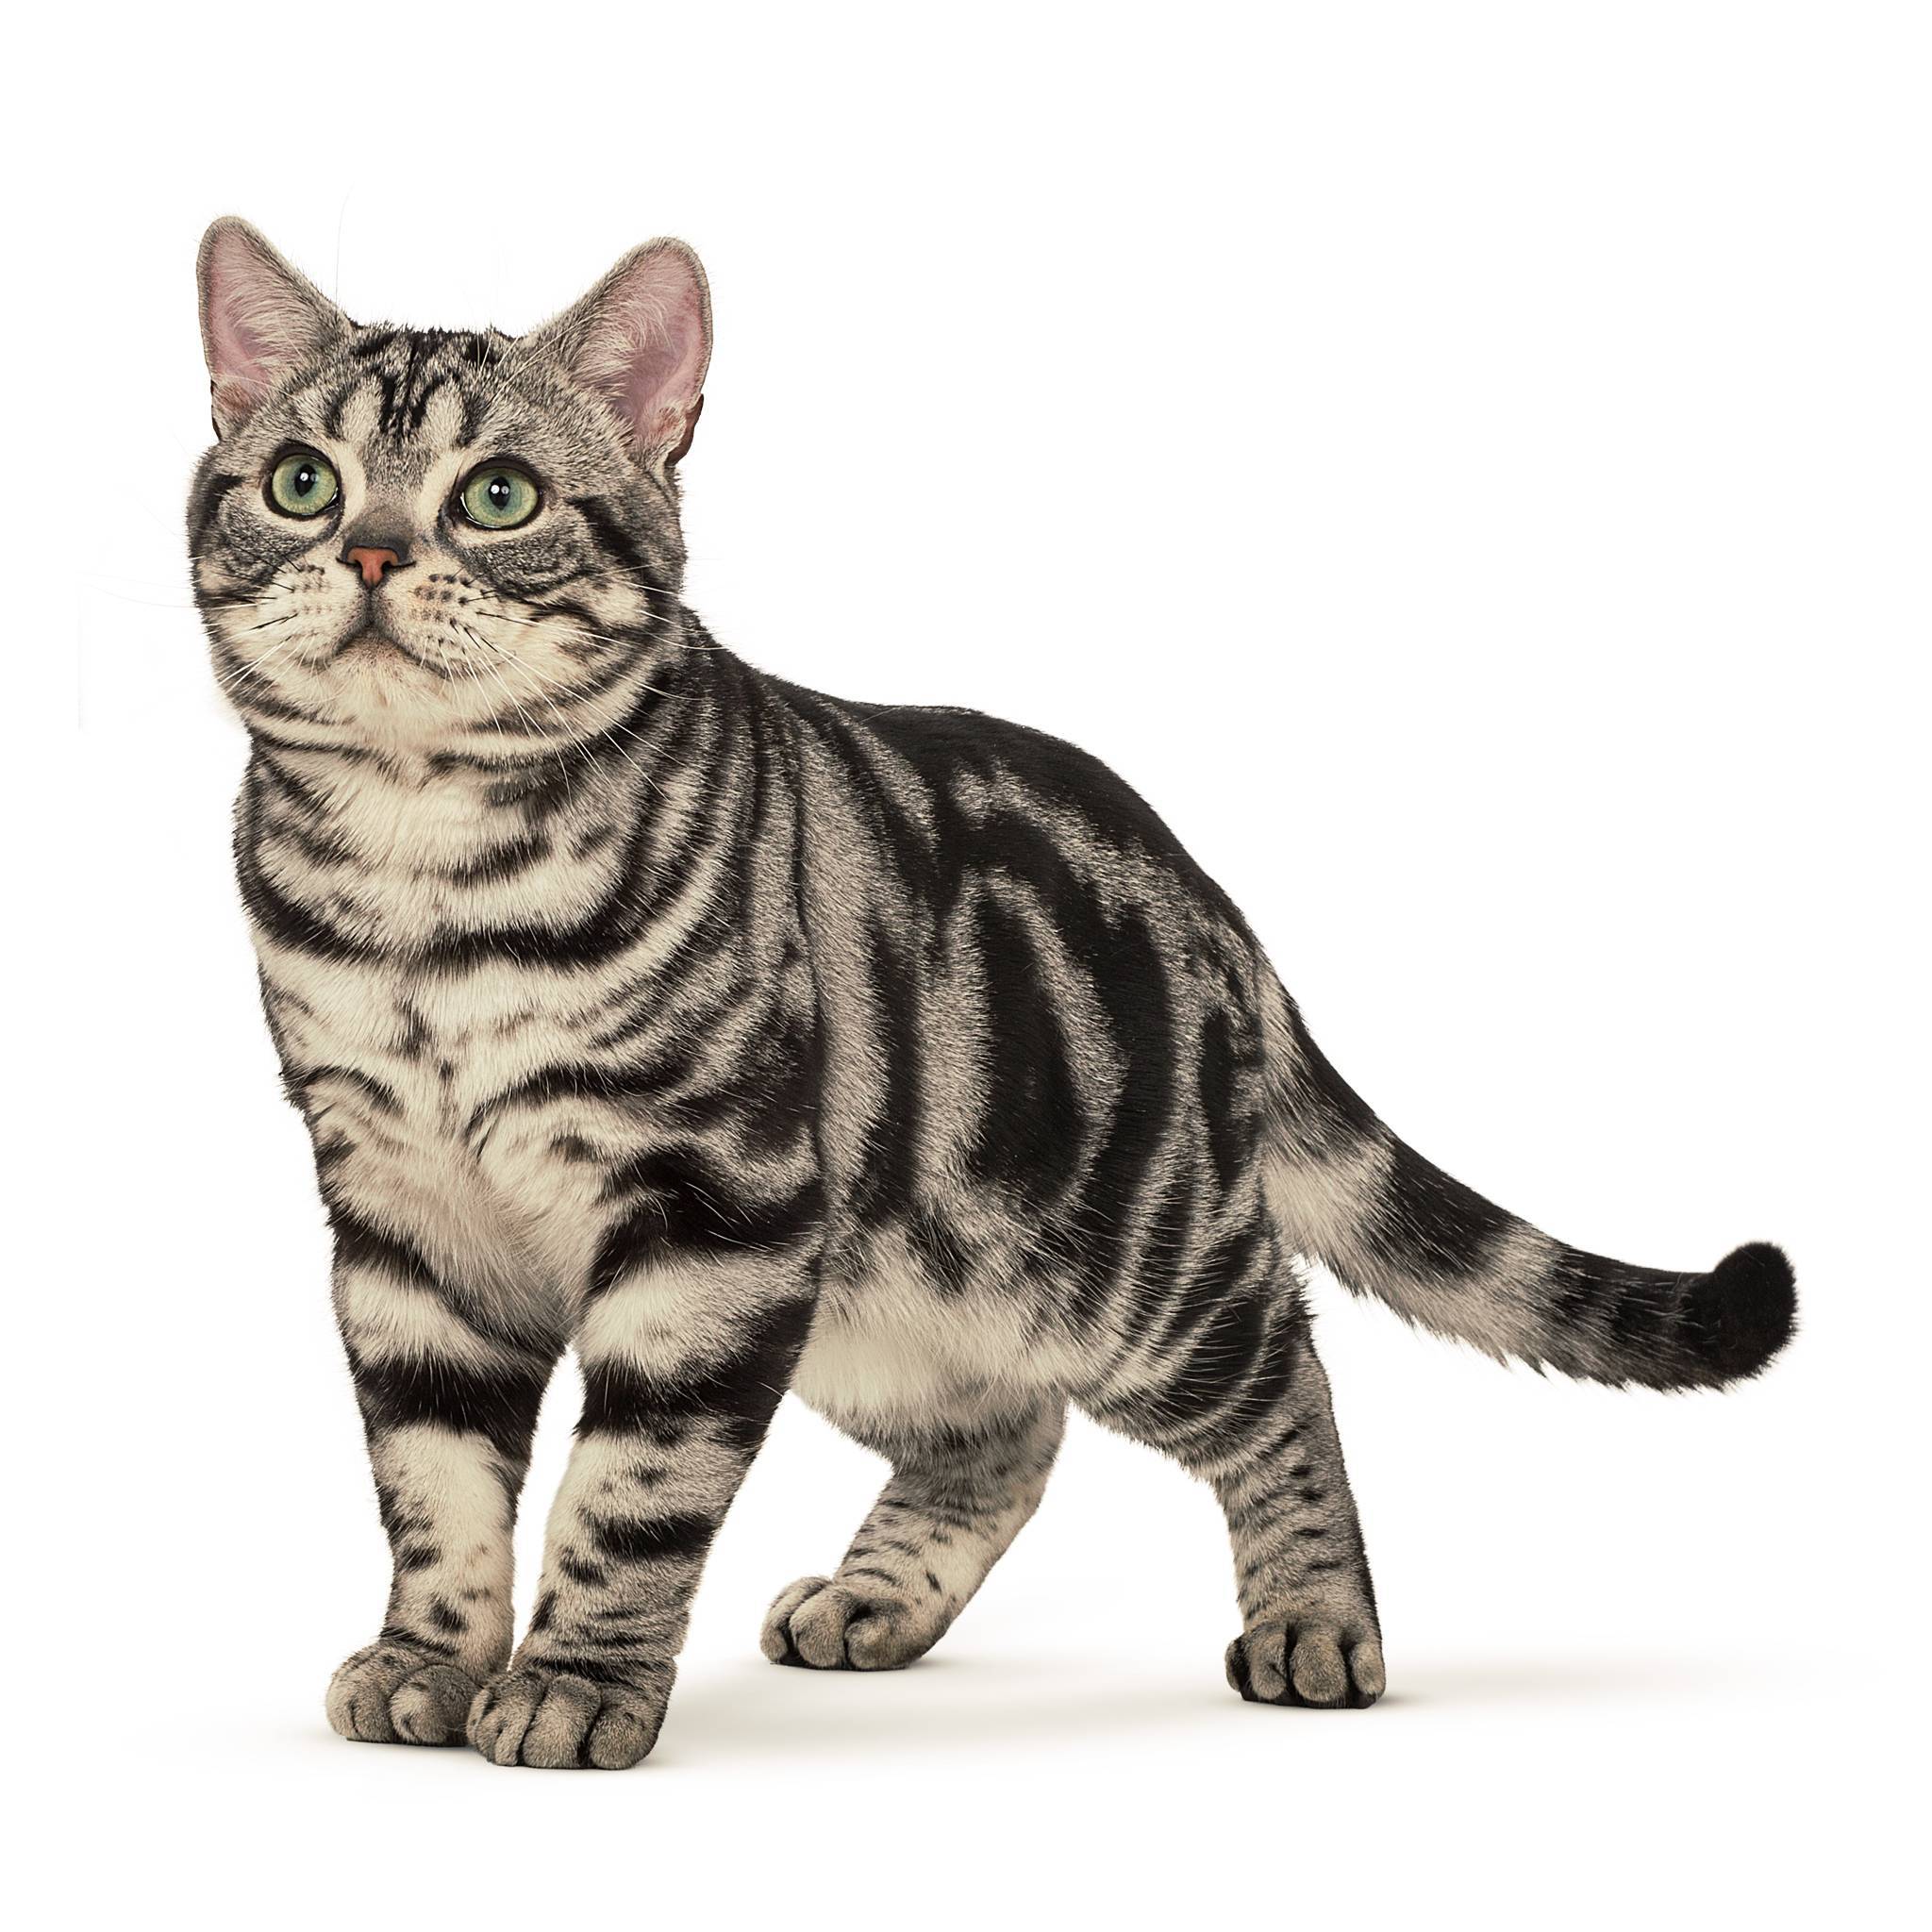 Американская короткошерстная кошка: фото, описание породы, цена